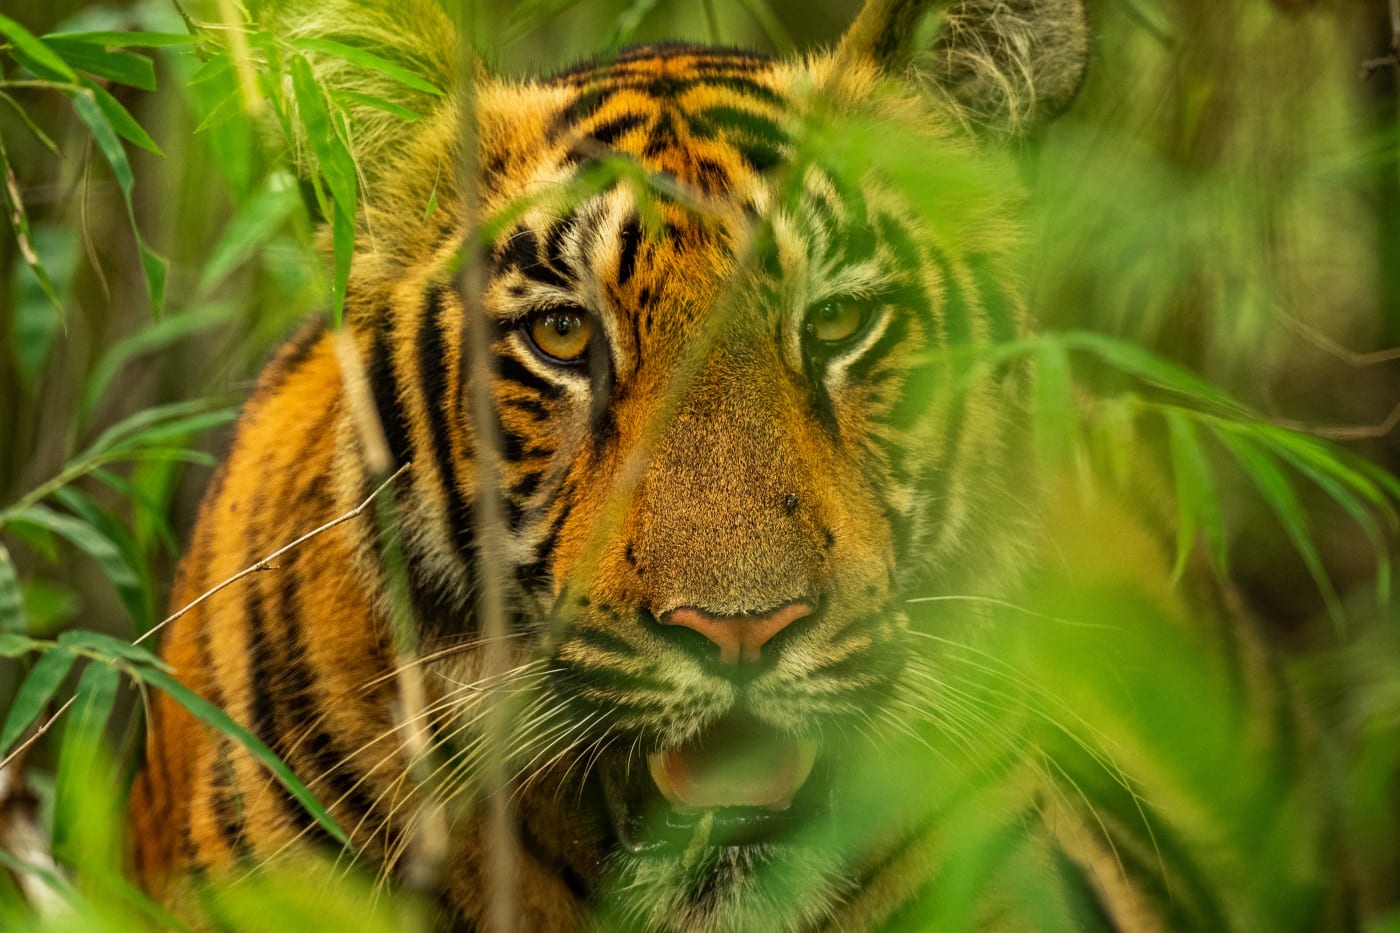 Tiger photographed at Tadoba Andhari Tiger Reserve, India.